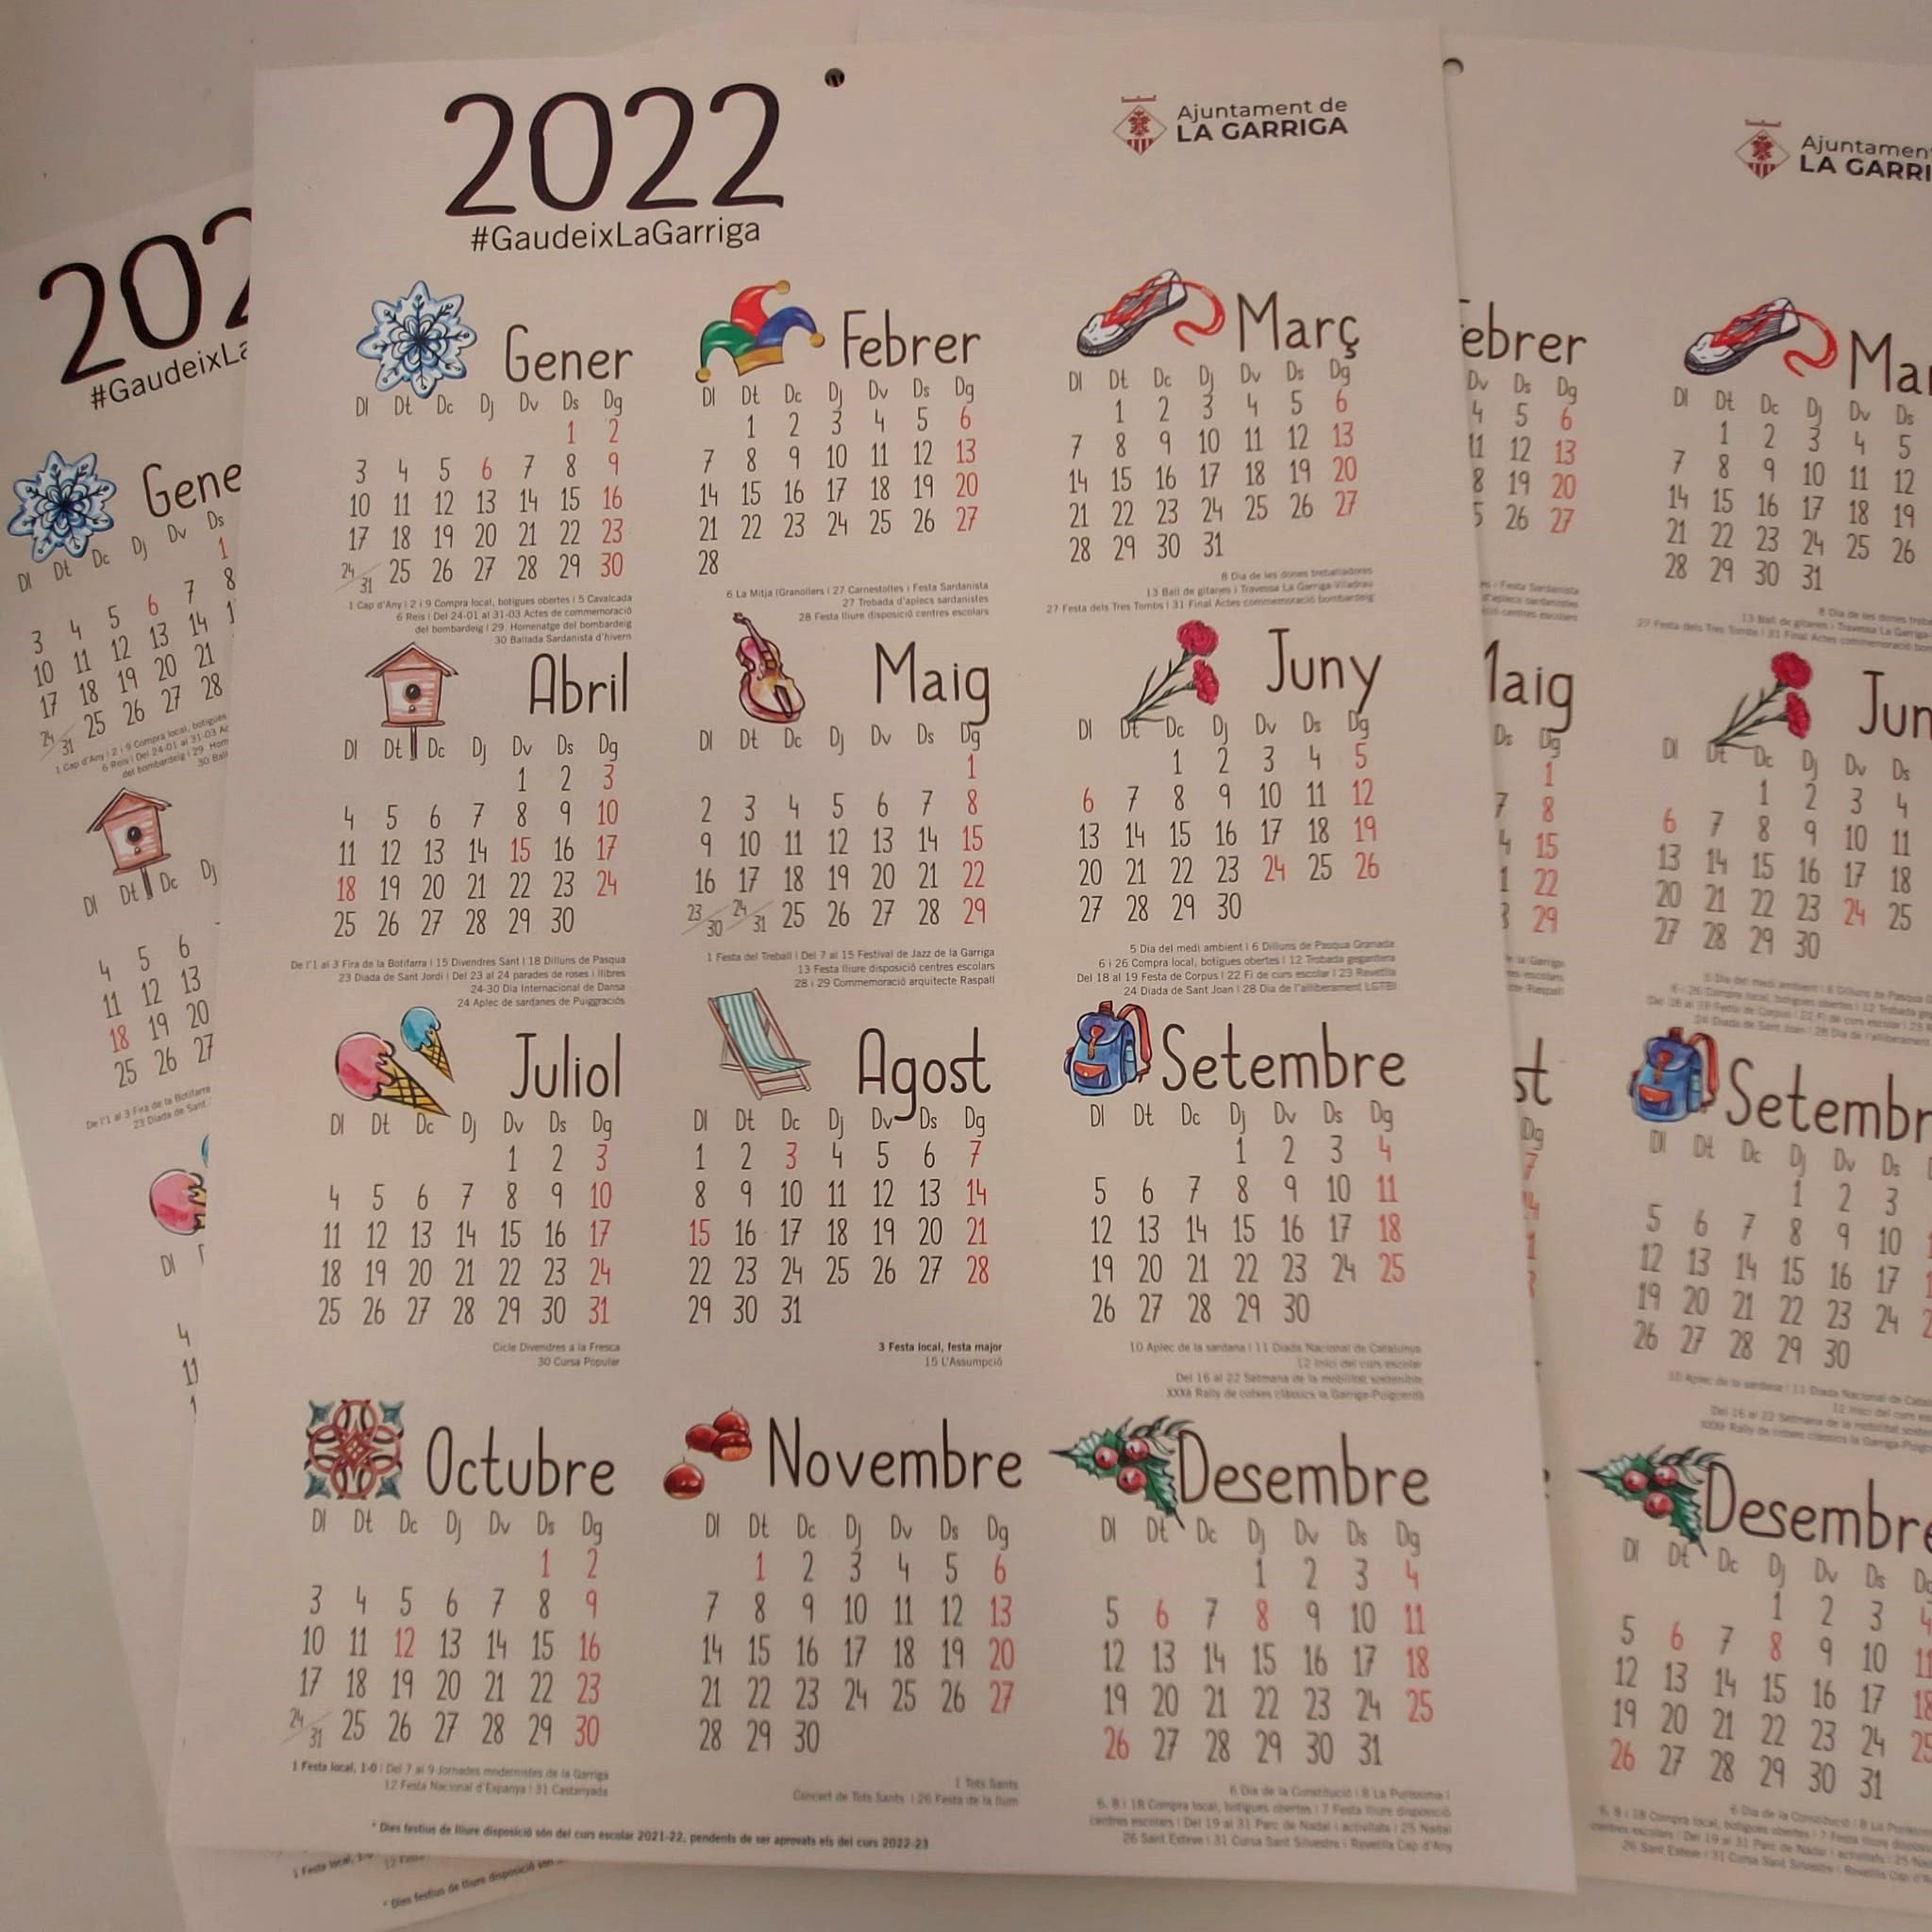 Ja tens el calendari de la Garriga?